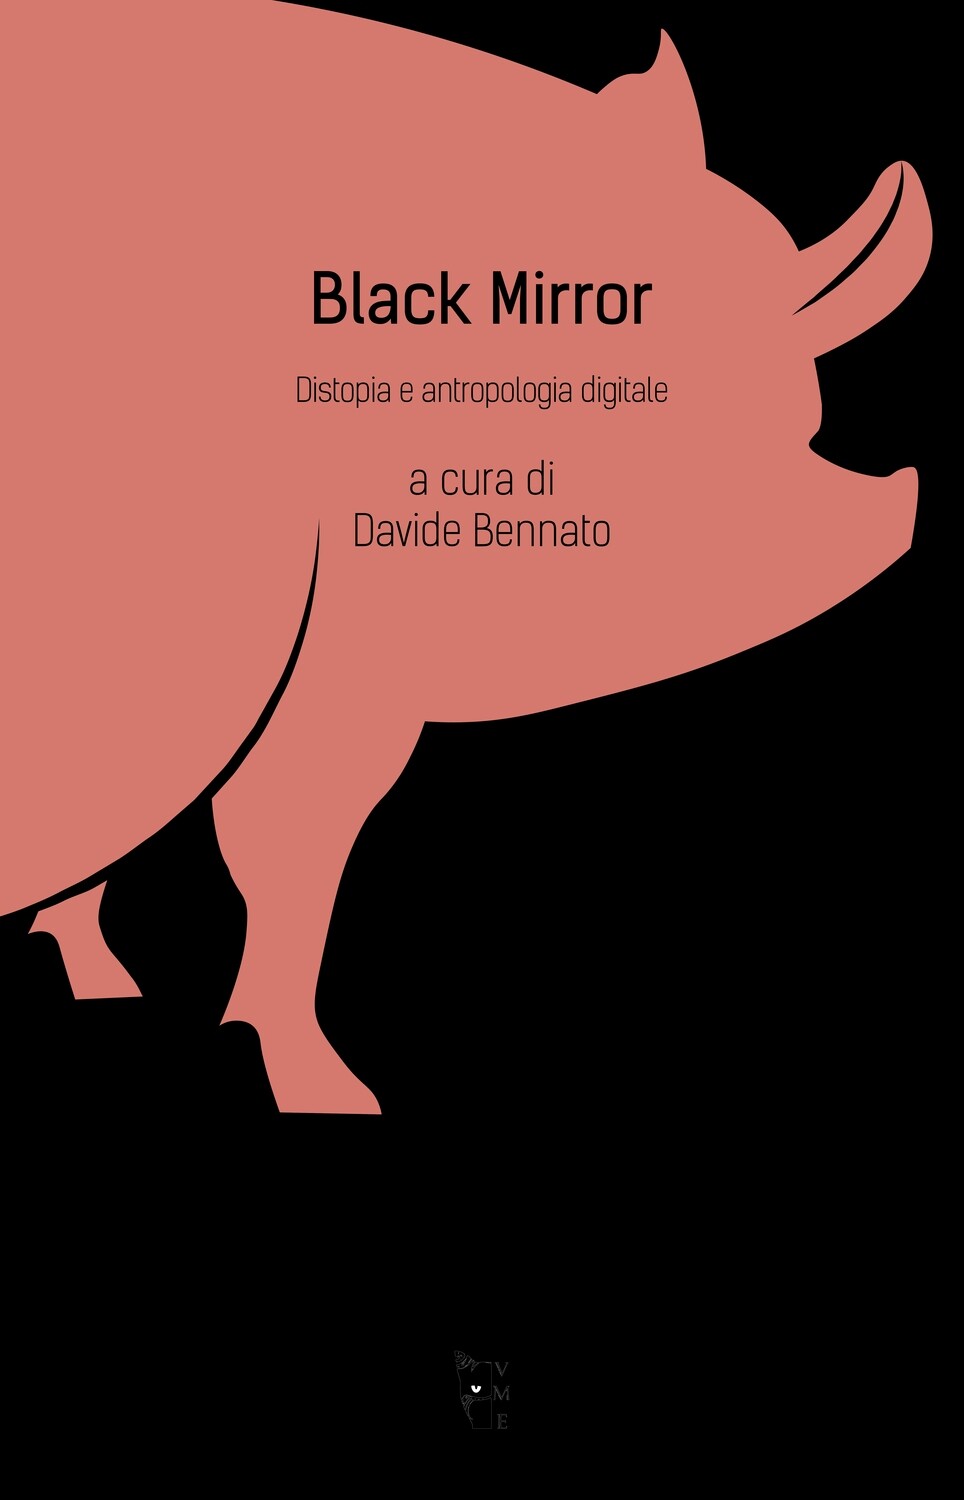 A cura di Davide Bennato - Black Mirror. Distopia e antropologia digitale.